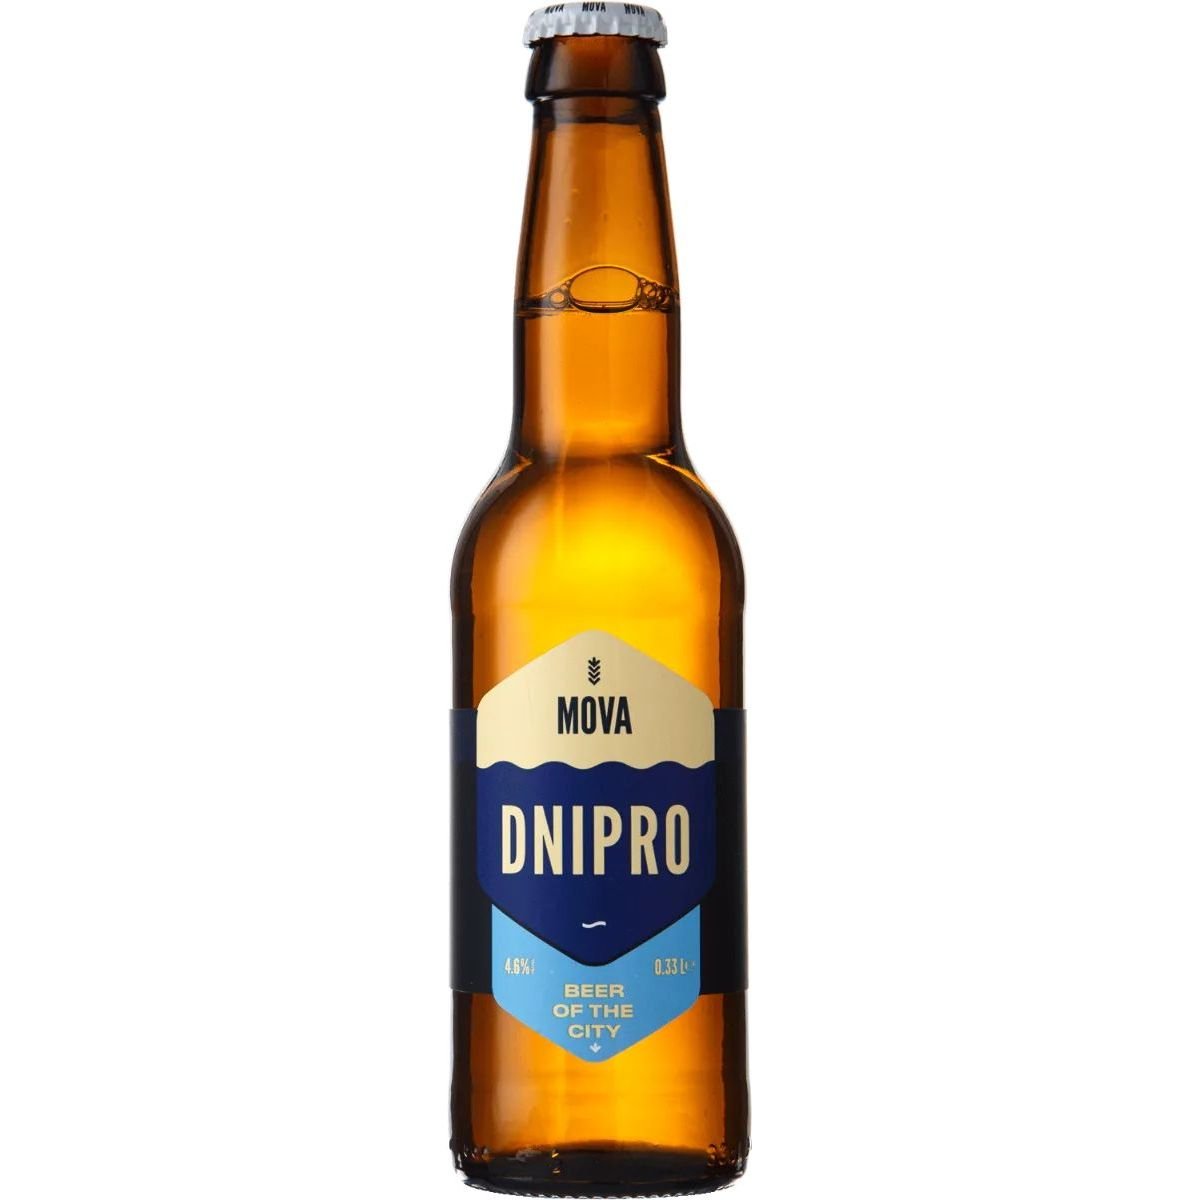 Пиво MOVA Dnipro Beer of the City, светлое, нефильтрованное, 4,6%, 0,33 л - фото 1